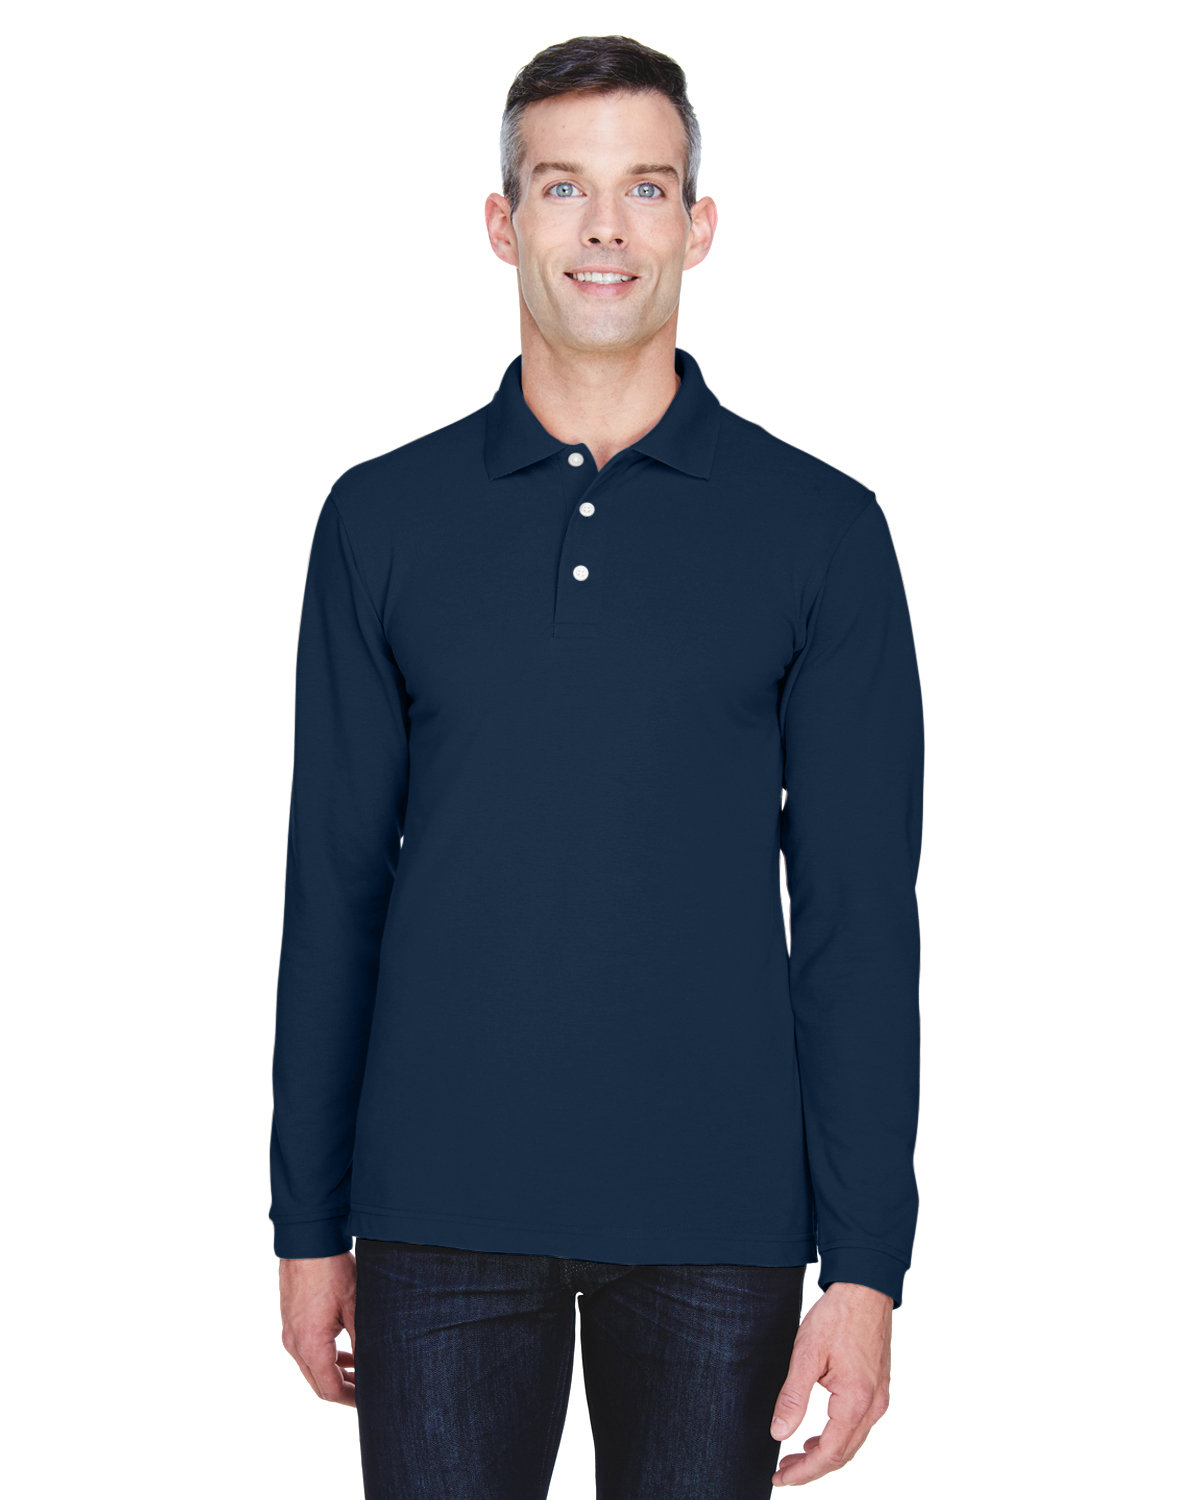 HARRITON - 5.6 oz Men's long sleeve easy blend Polo shirt